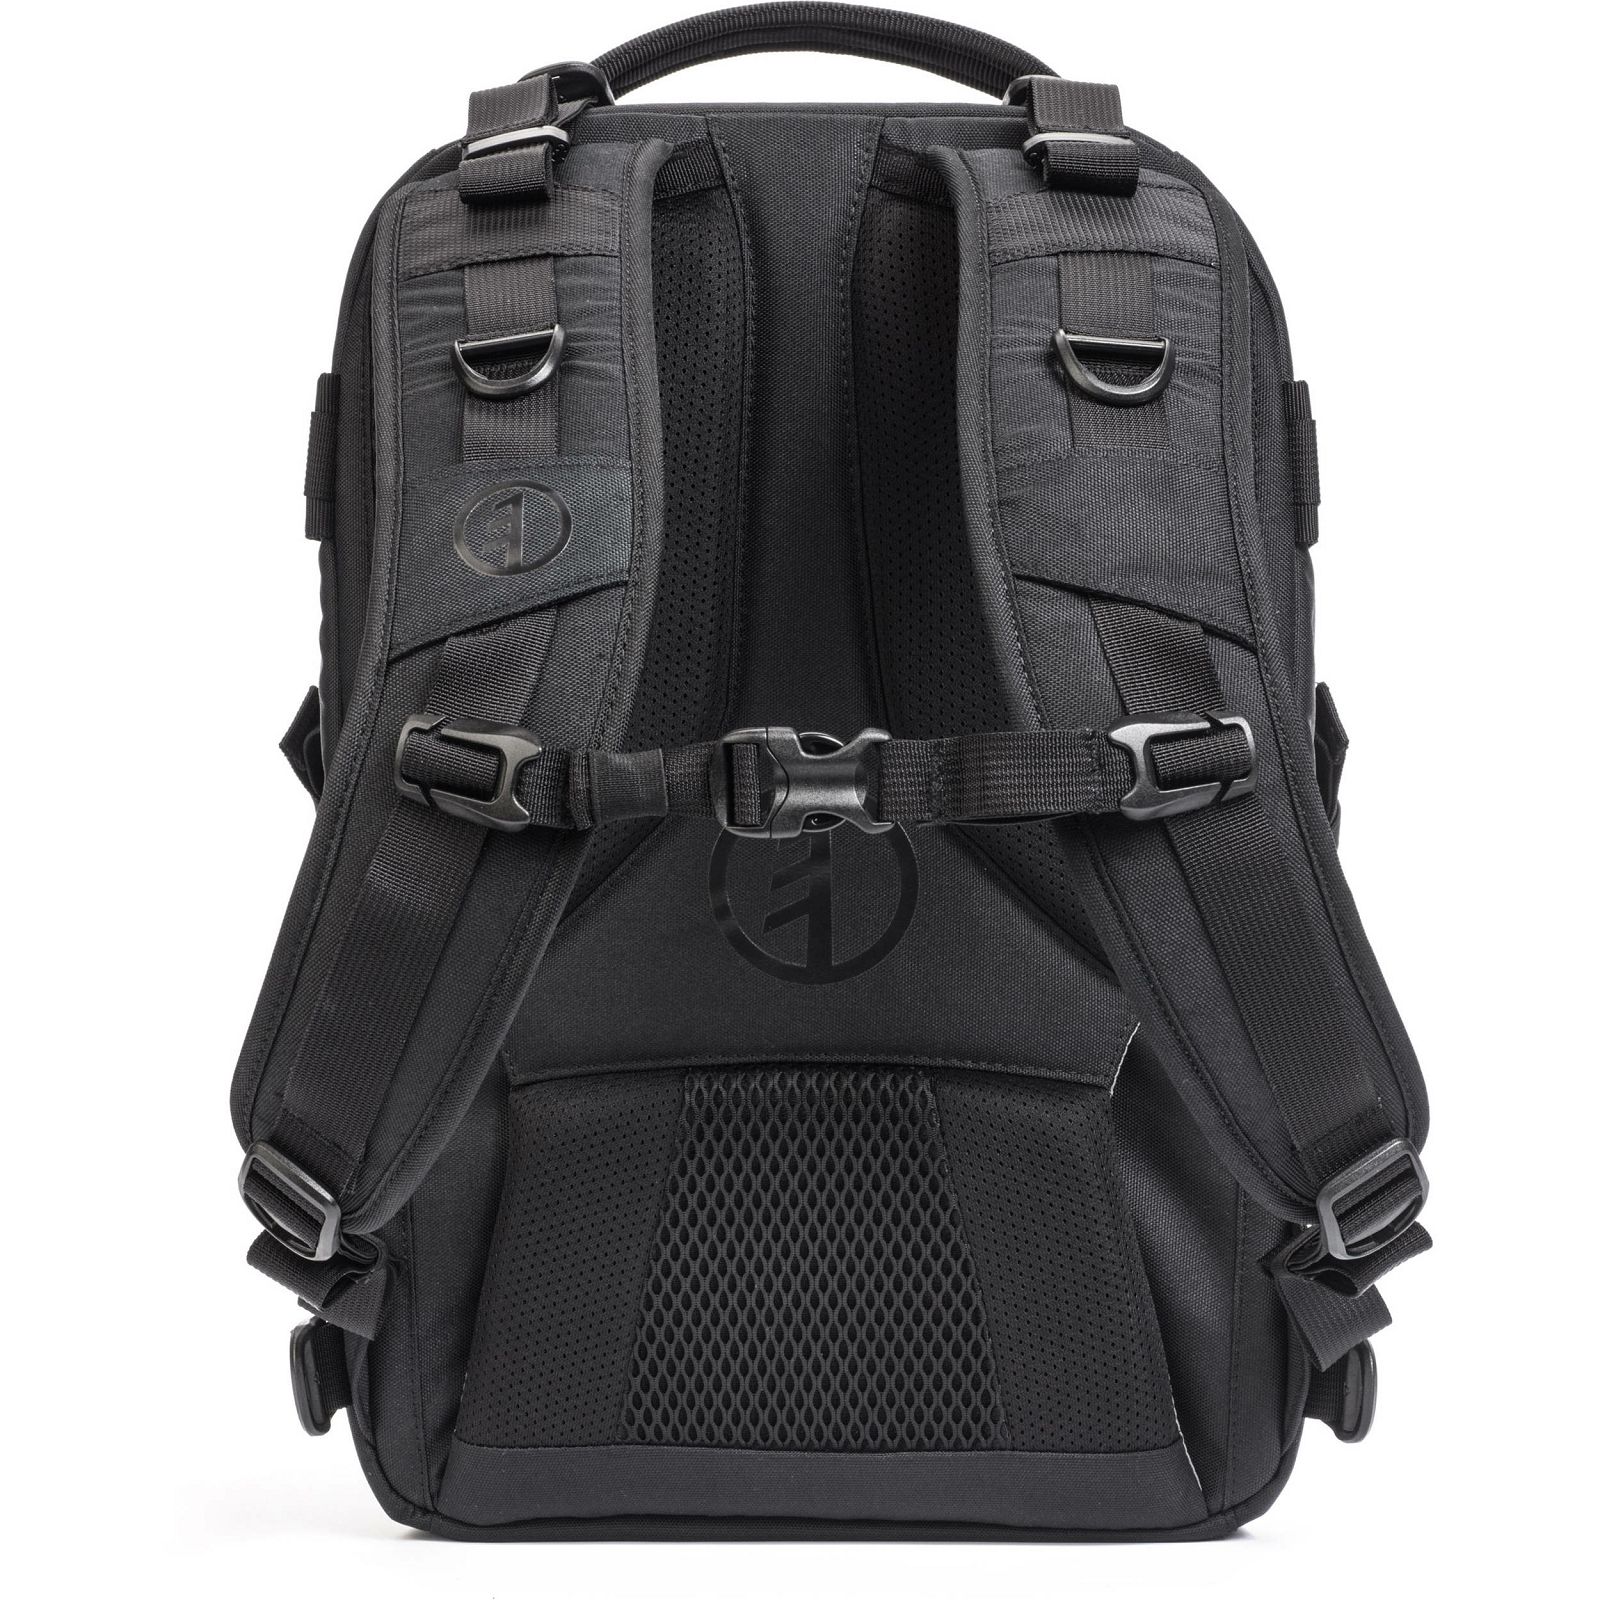 Tamrac Anvil 17 Backpack Black crni ruksak za foto opremu (T0220-1919)